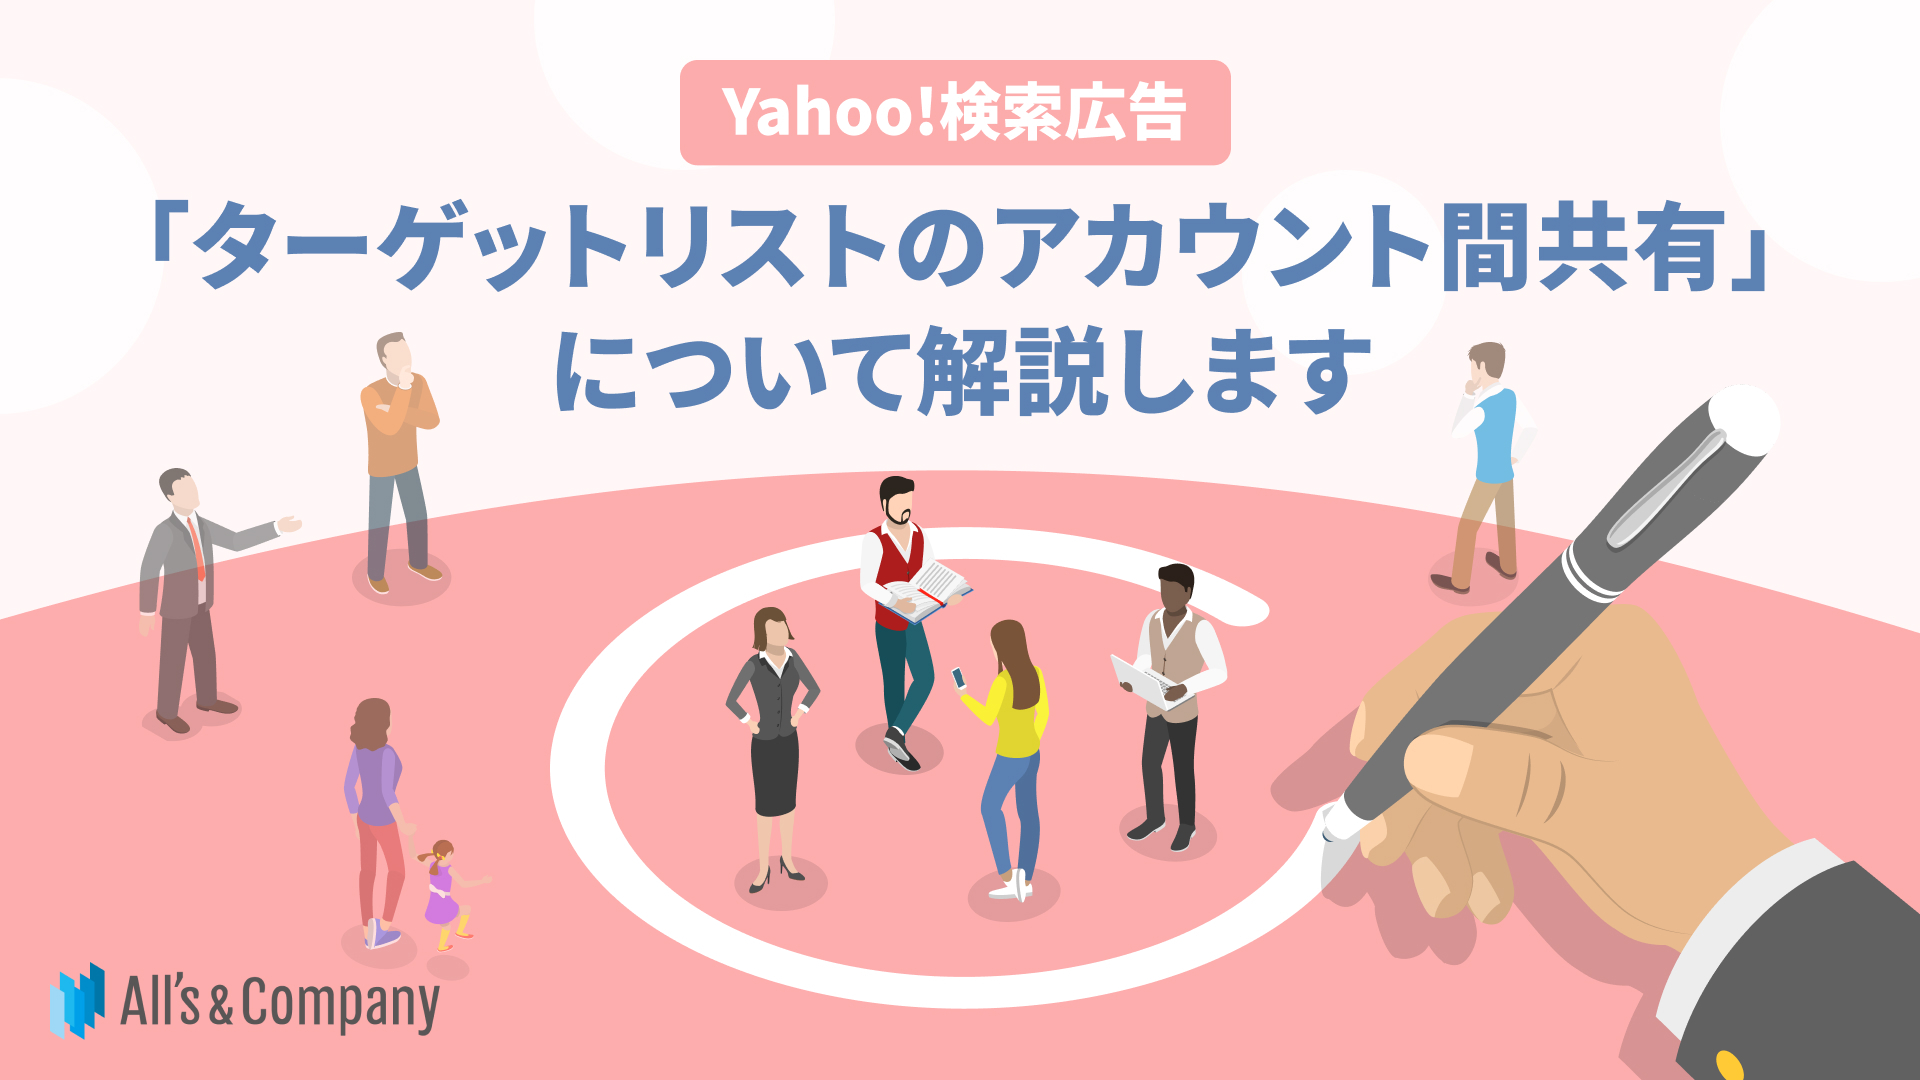 Yahoo!検索広告「ターゲットリストのアカウント間共有」について解説します